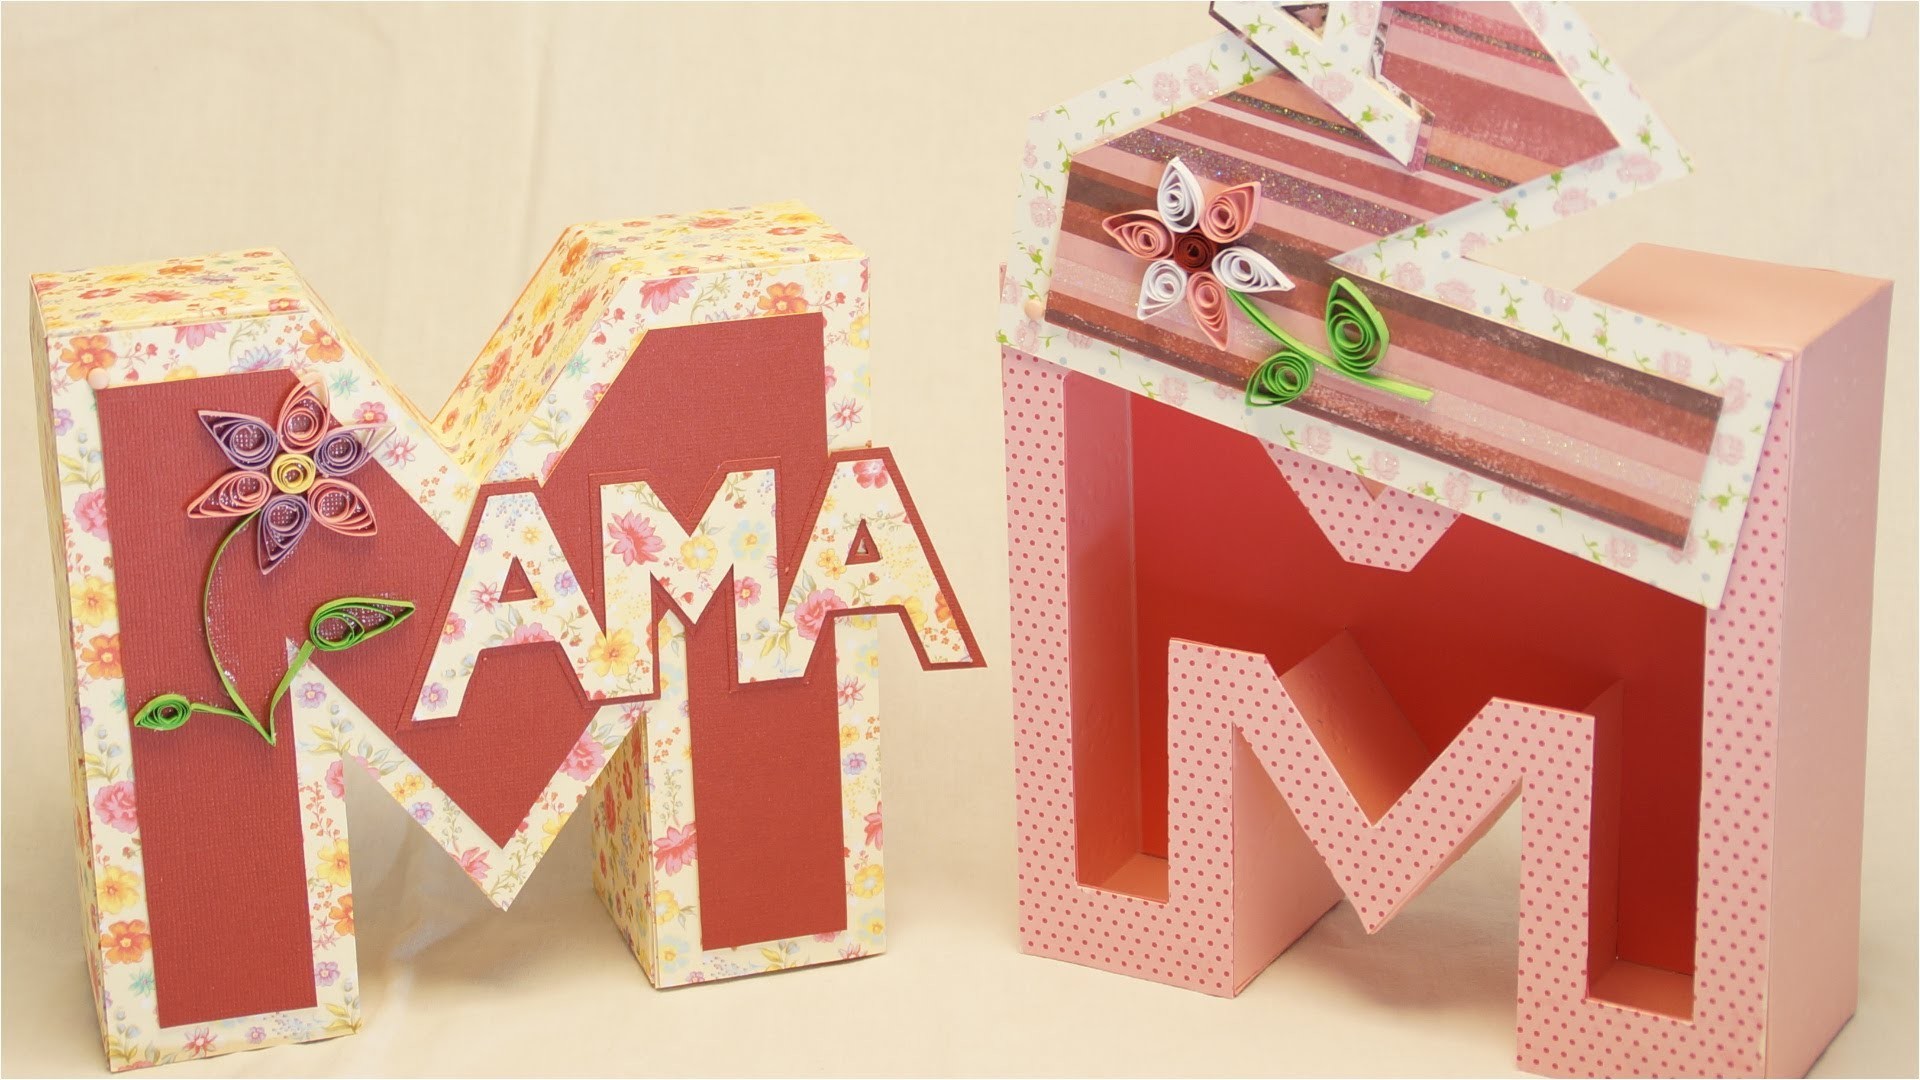 Muttertagsgeschenke basteln: MAMA Geschenkbox. Buchstabenbox zum Muttertag basteln